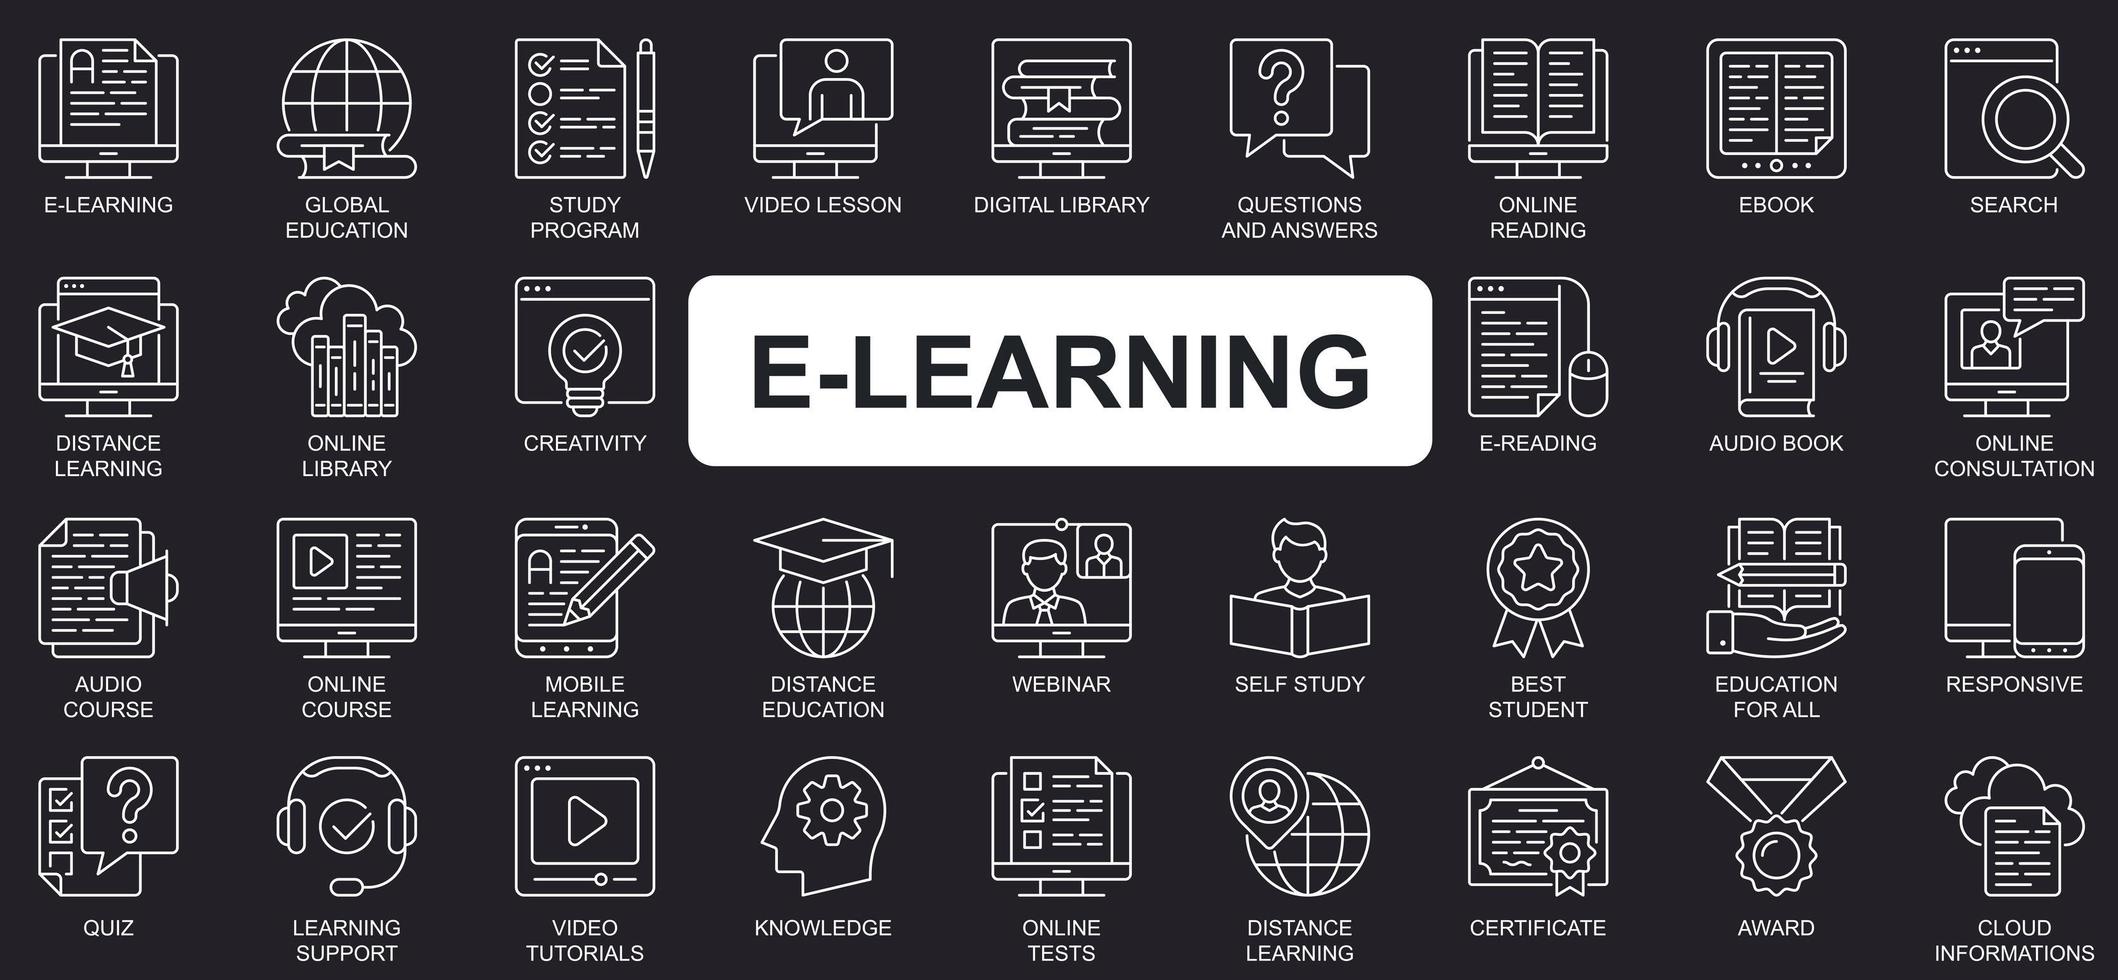 E-Learning-Konzept einfache Liniensymbole gesetzt. Paket aus globaler Bildung, Studienprogramm, Videounterricht, digitaler Bibliothek, Webinar und anderen. Vektorpaket-Umrisssymbole für Website- oder mobile App-Design vektor